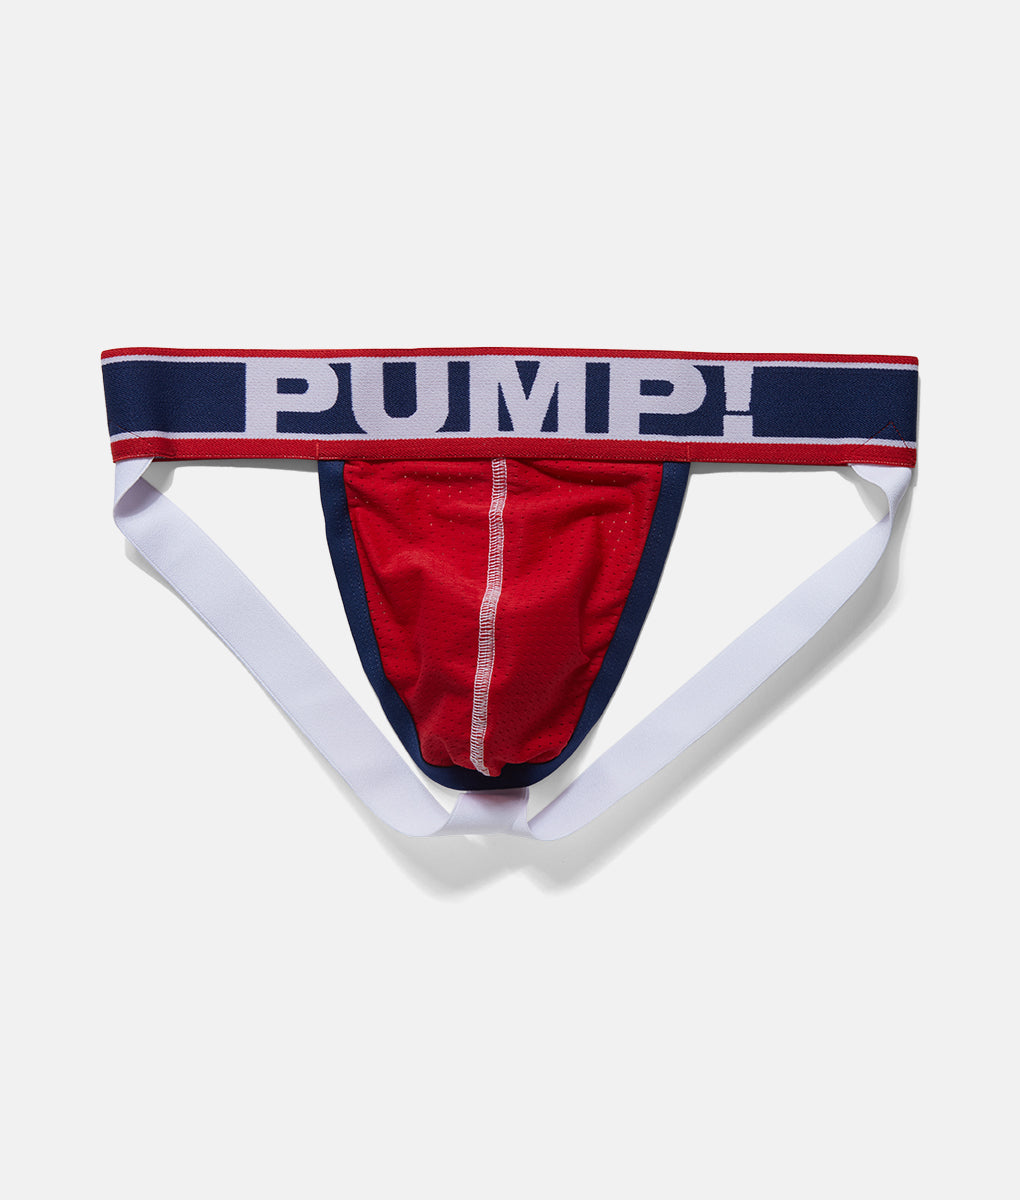 PUMP! Fever Jockstrap - Underwear Expert